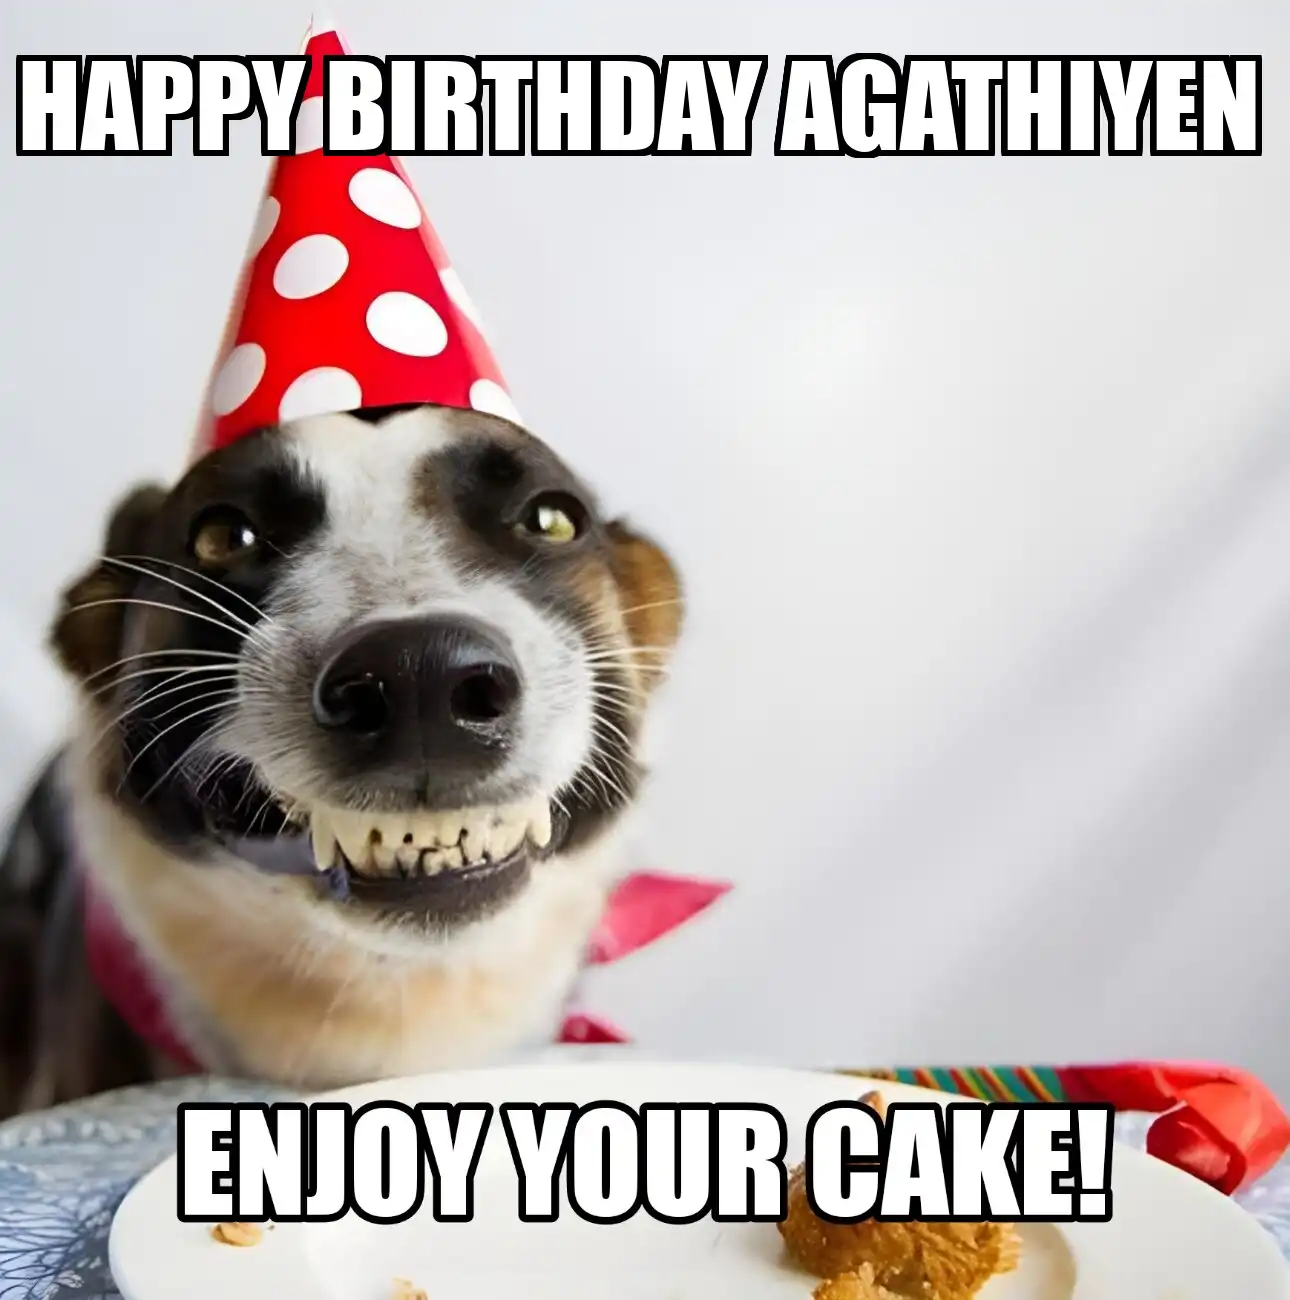 Happy Birthday Agathiyen Enjoy Your Cake Dog Meme